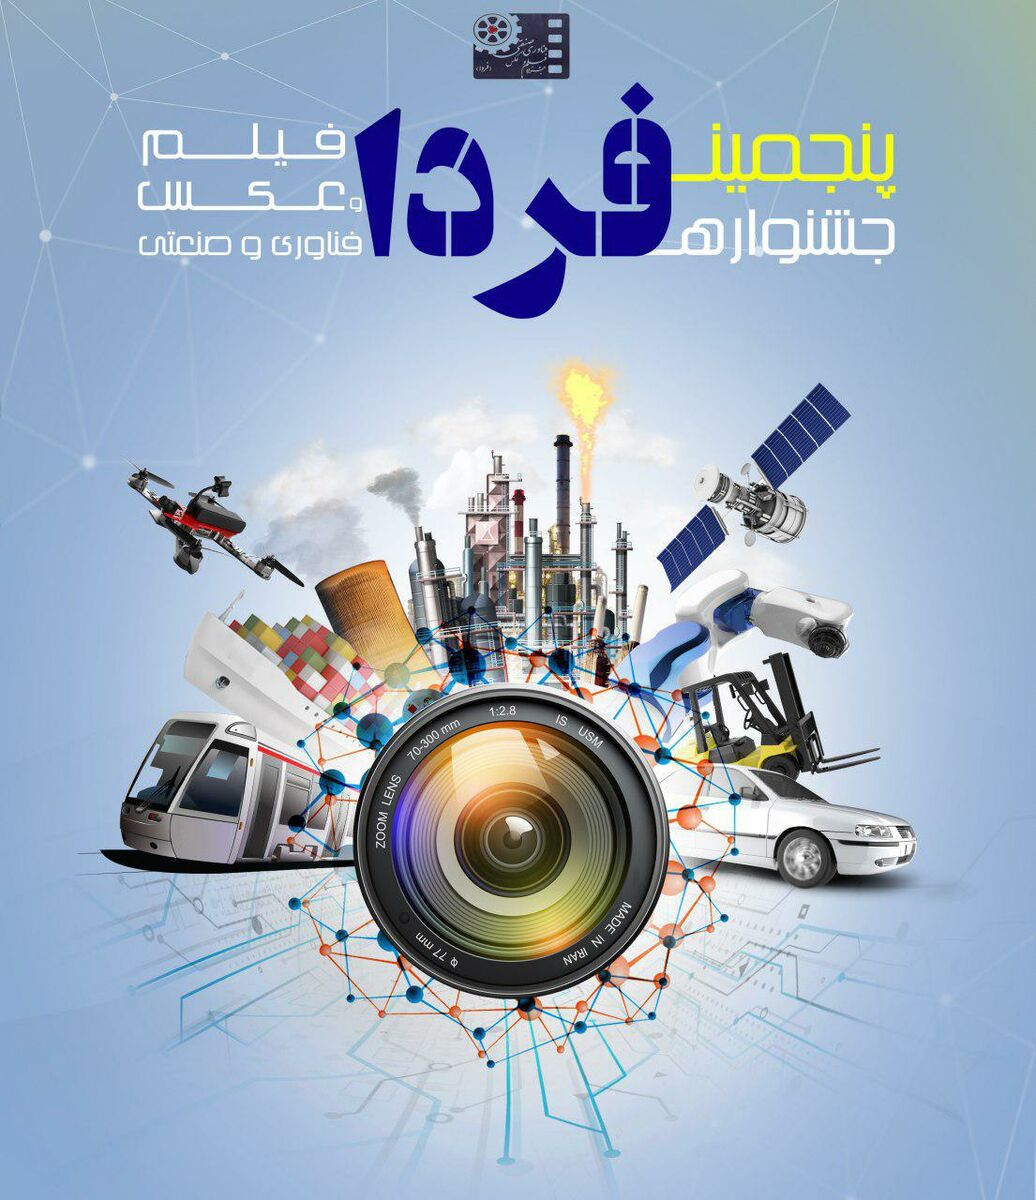 فراخوان پنجمین جشنواره فیلم و عکس فناوری و صنعتی 